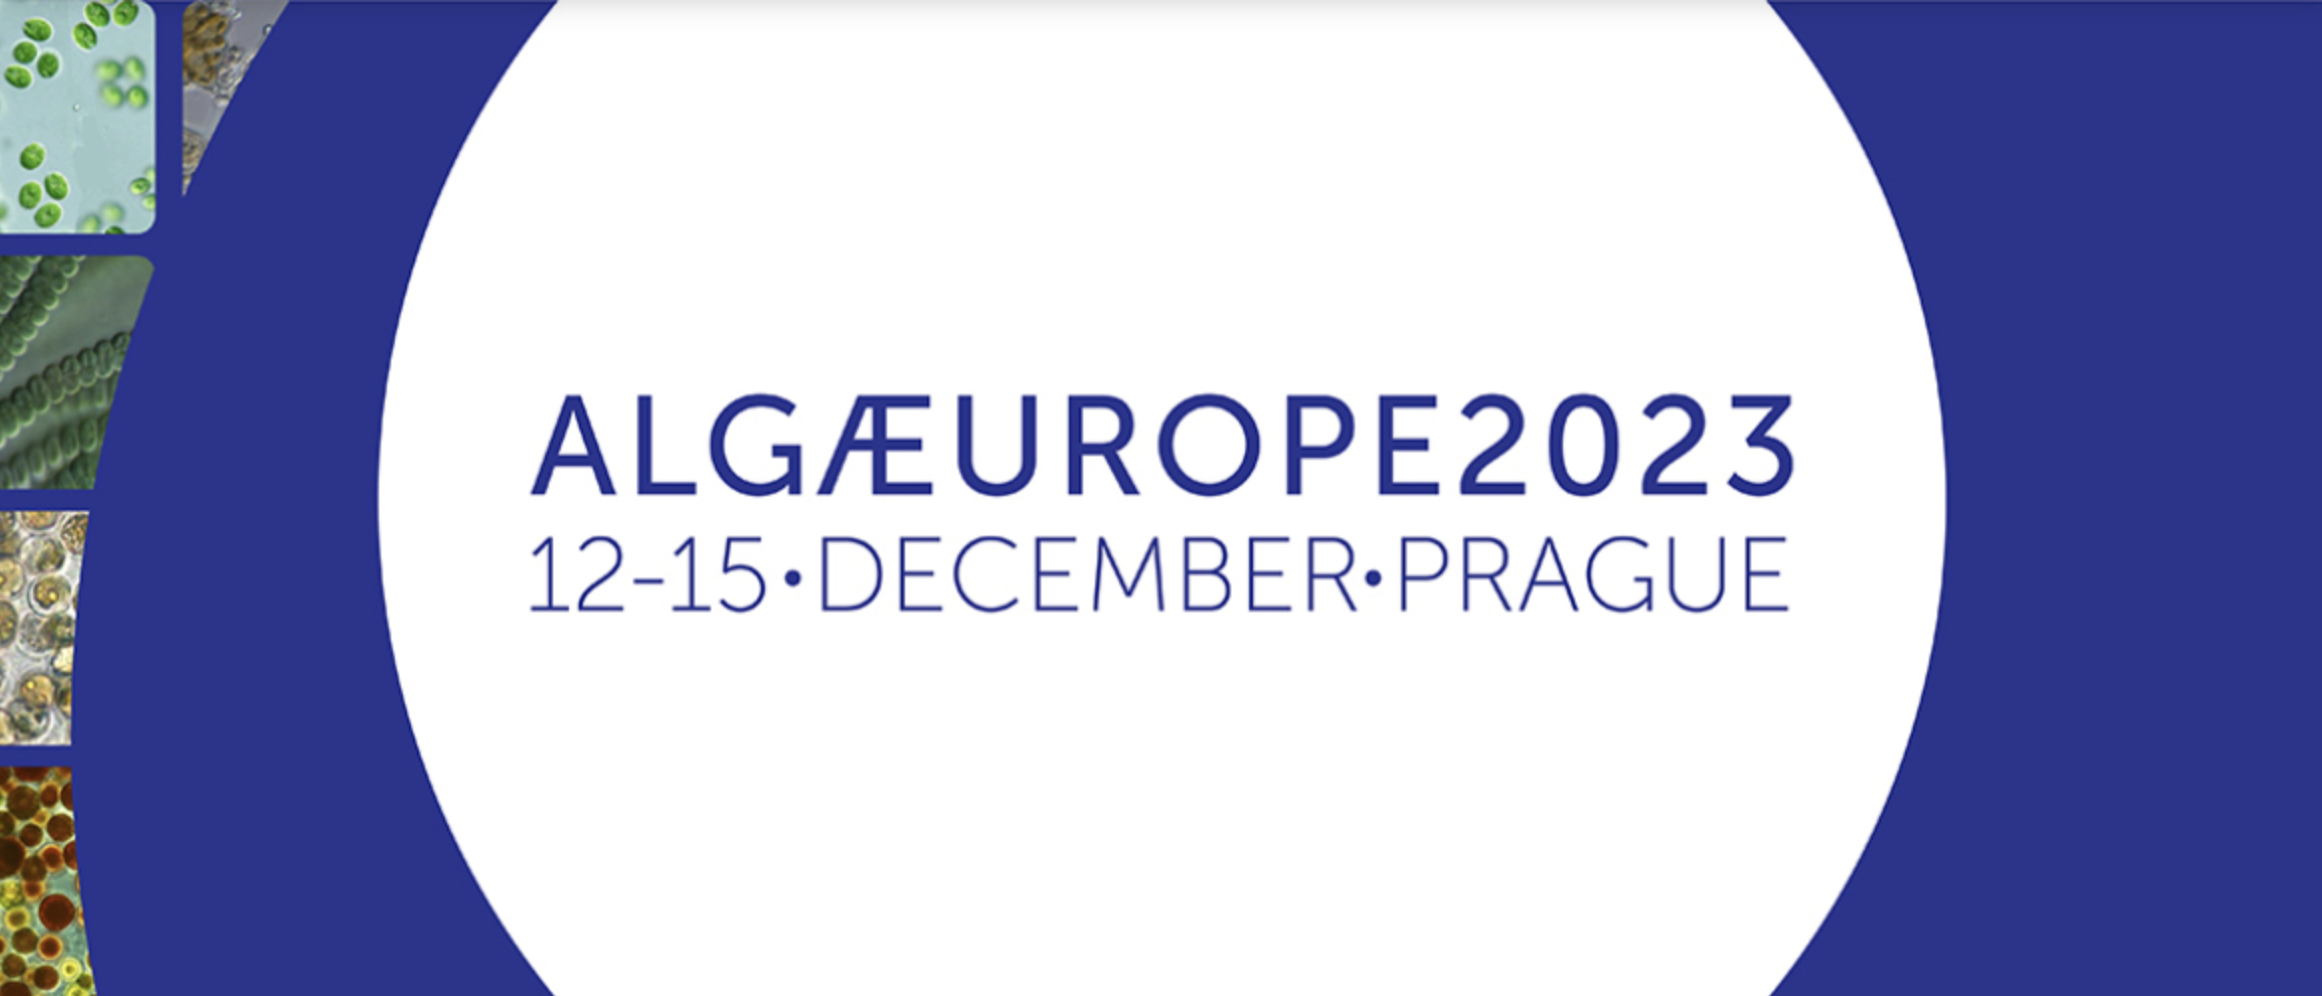 Innoaqua - AlgaEurope Convention 2023